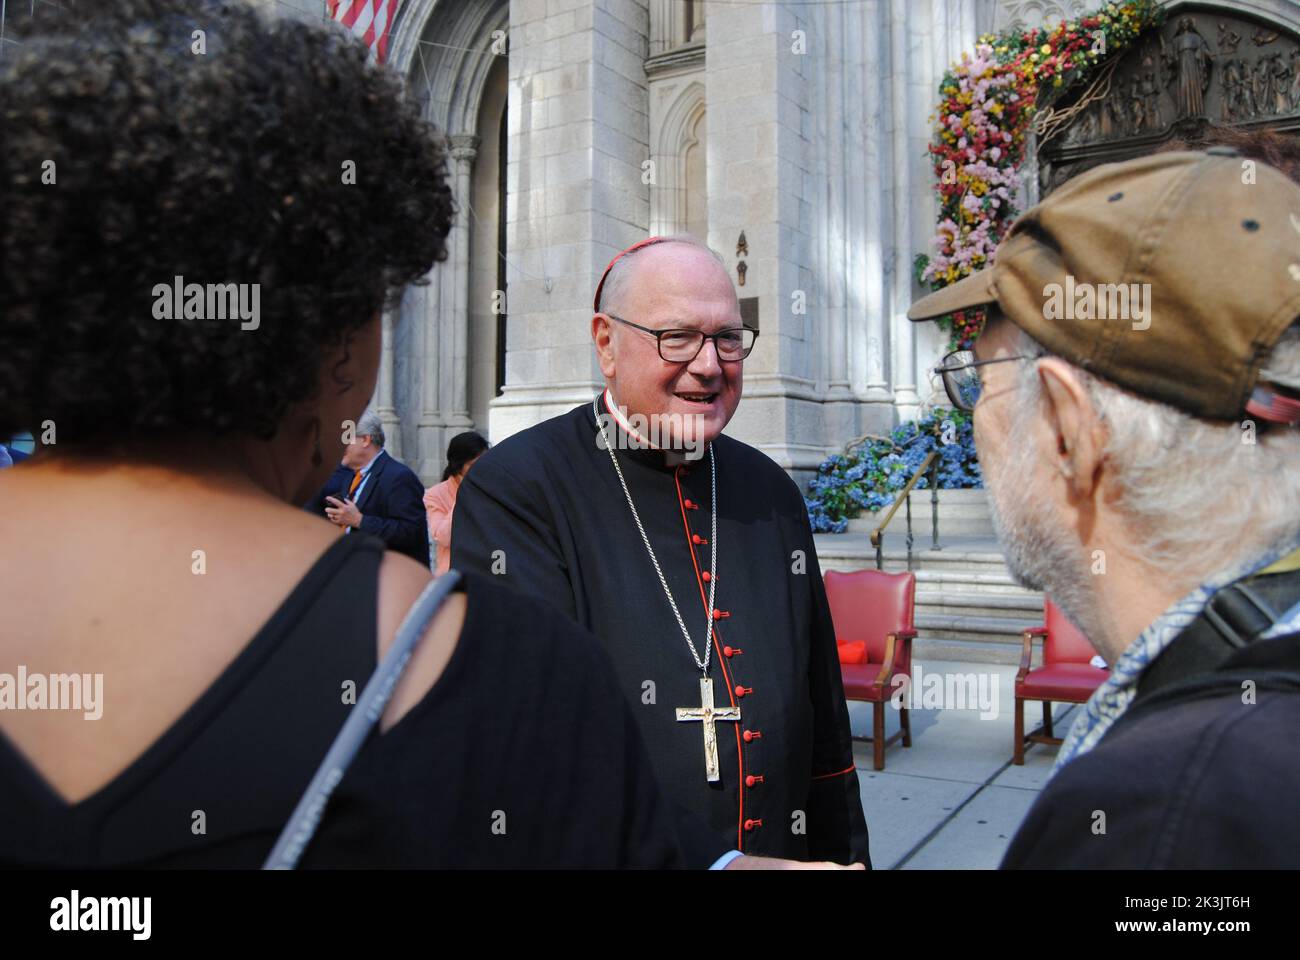 New York, New York, États-Unis - sept 10 2022 : le cardinal Timothy Dolan, archevêque de New York, près de la cathédrale Saint-Patrick pendant la parade de la fête du travail. Banque D'Images